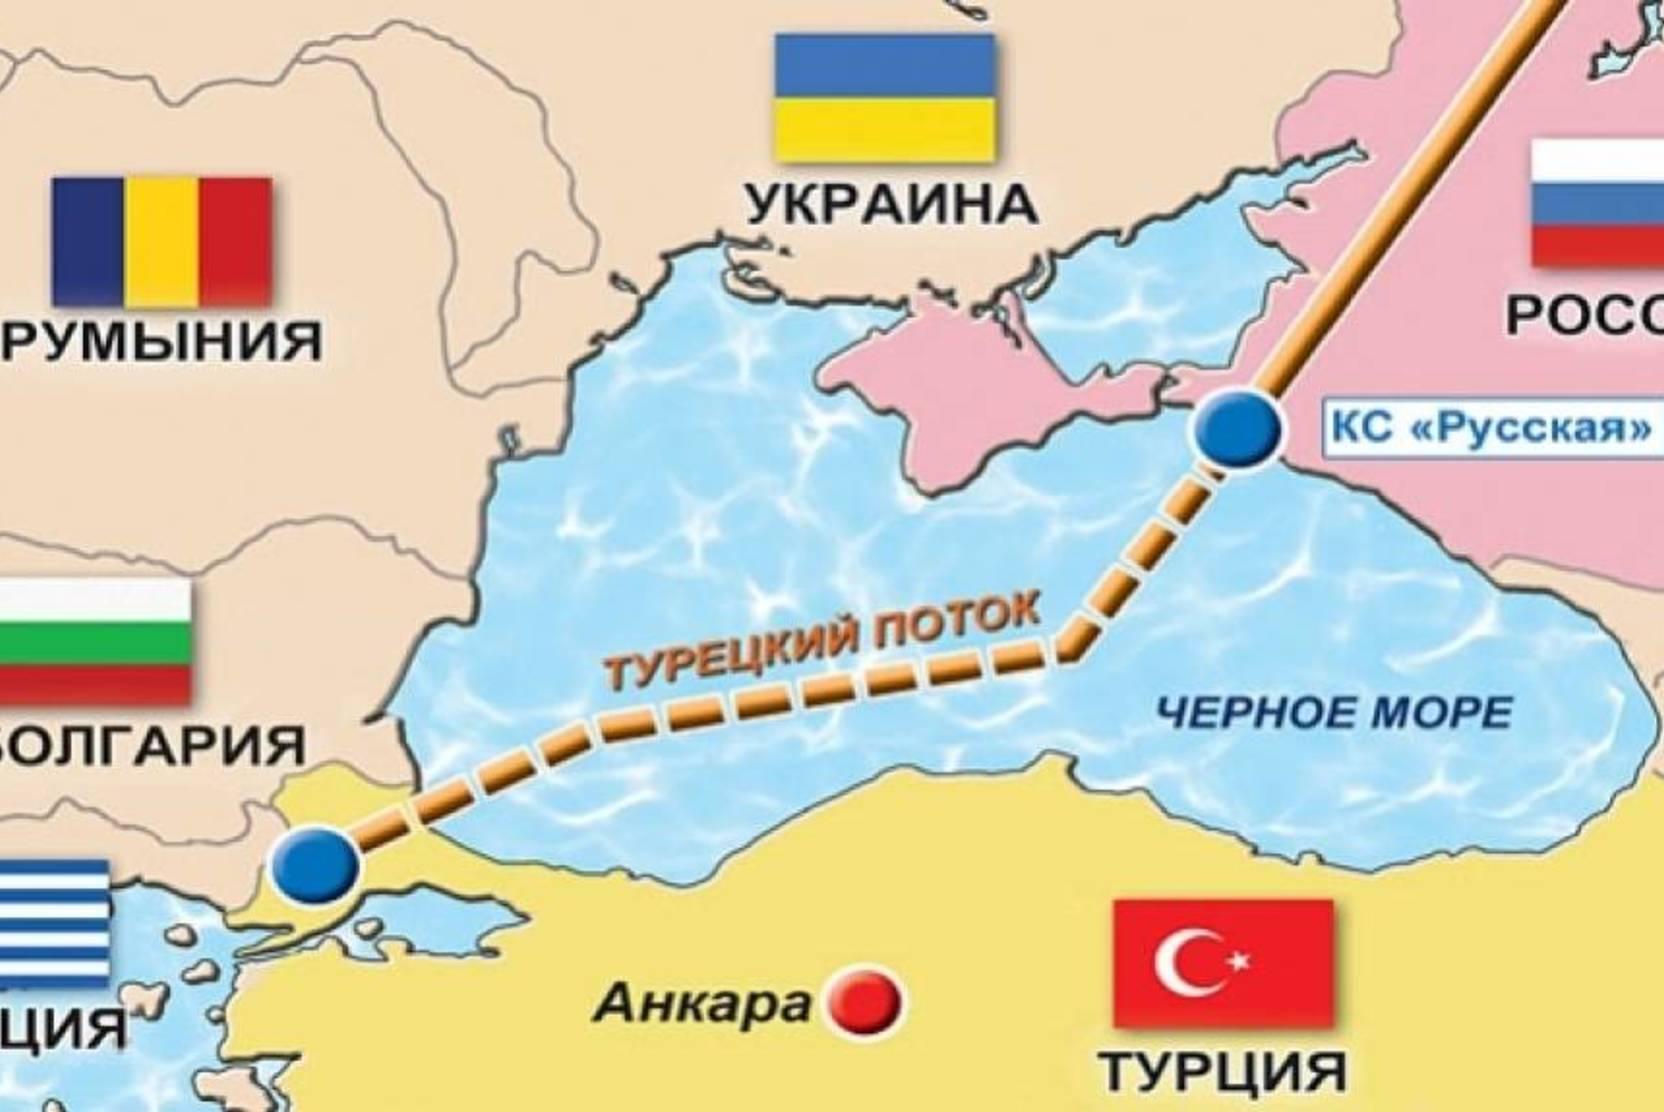 Գործարկվում է Թուրքական հոսքը. ինչ կստանան Ռուսաստանն ու Թուրքիան և մյուսները